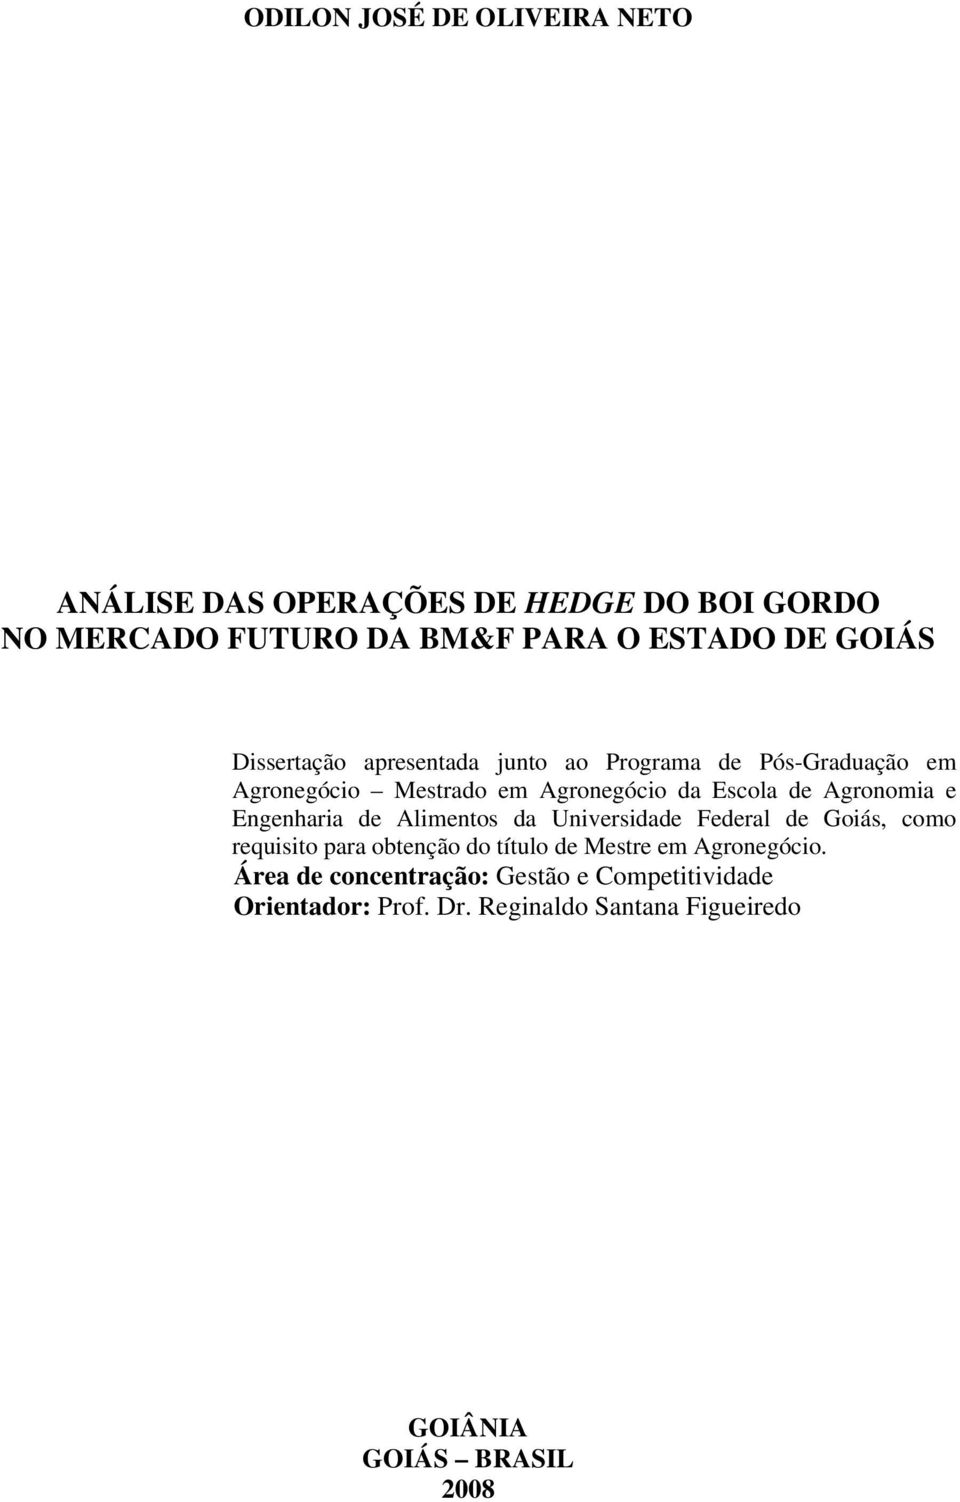 Engenharia de Alimentos da Universidade Federal de Goiás, como requisito para obtenção do título de Mestre em Agronegócio.